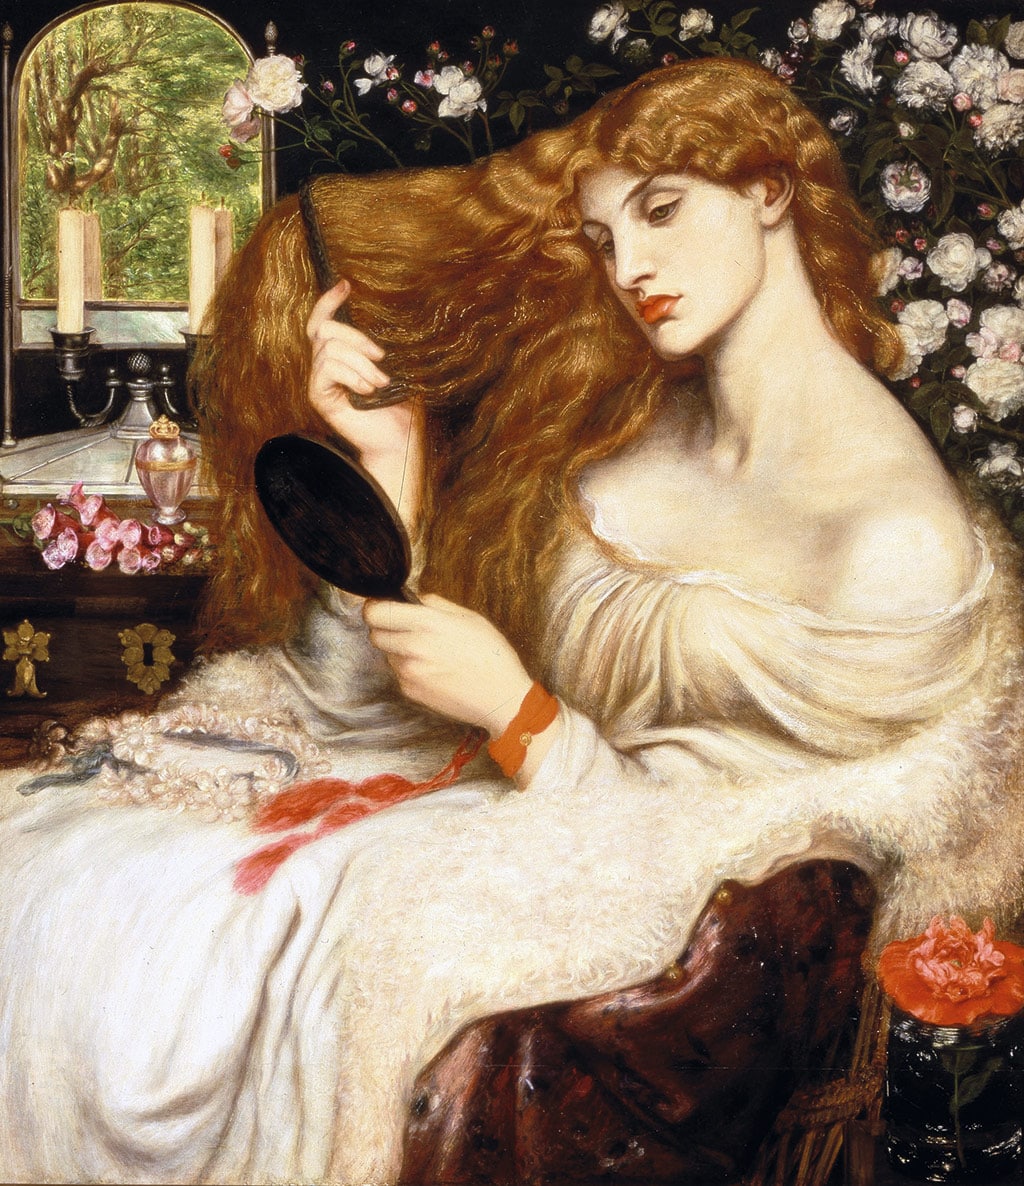 La construcción del mito de la 'femme fatale' plasmado en el arte del siglo XIX